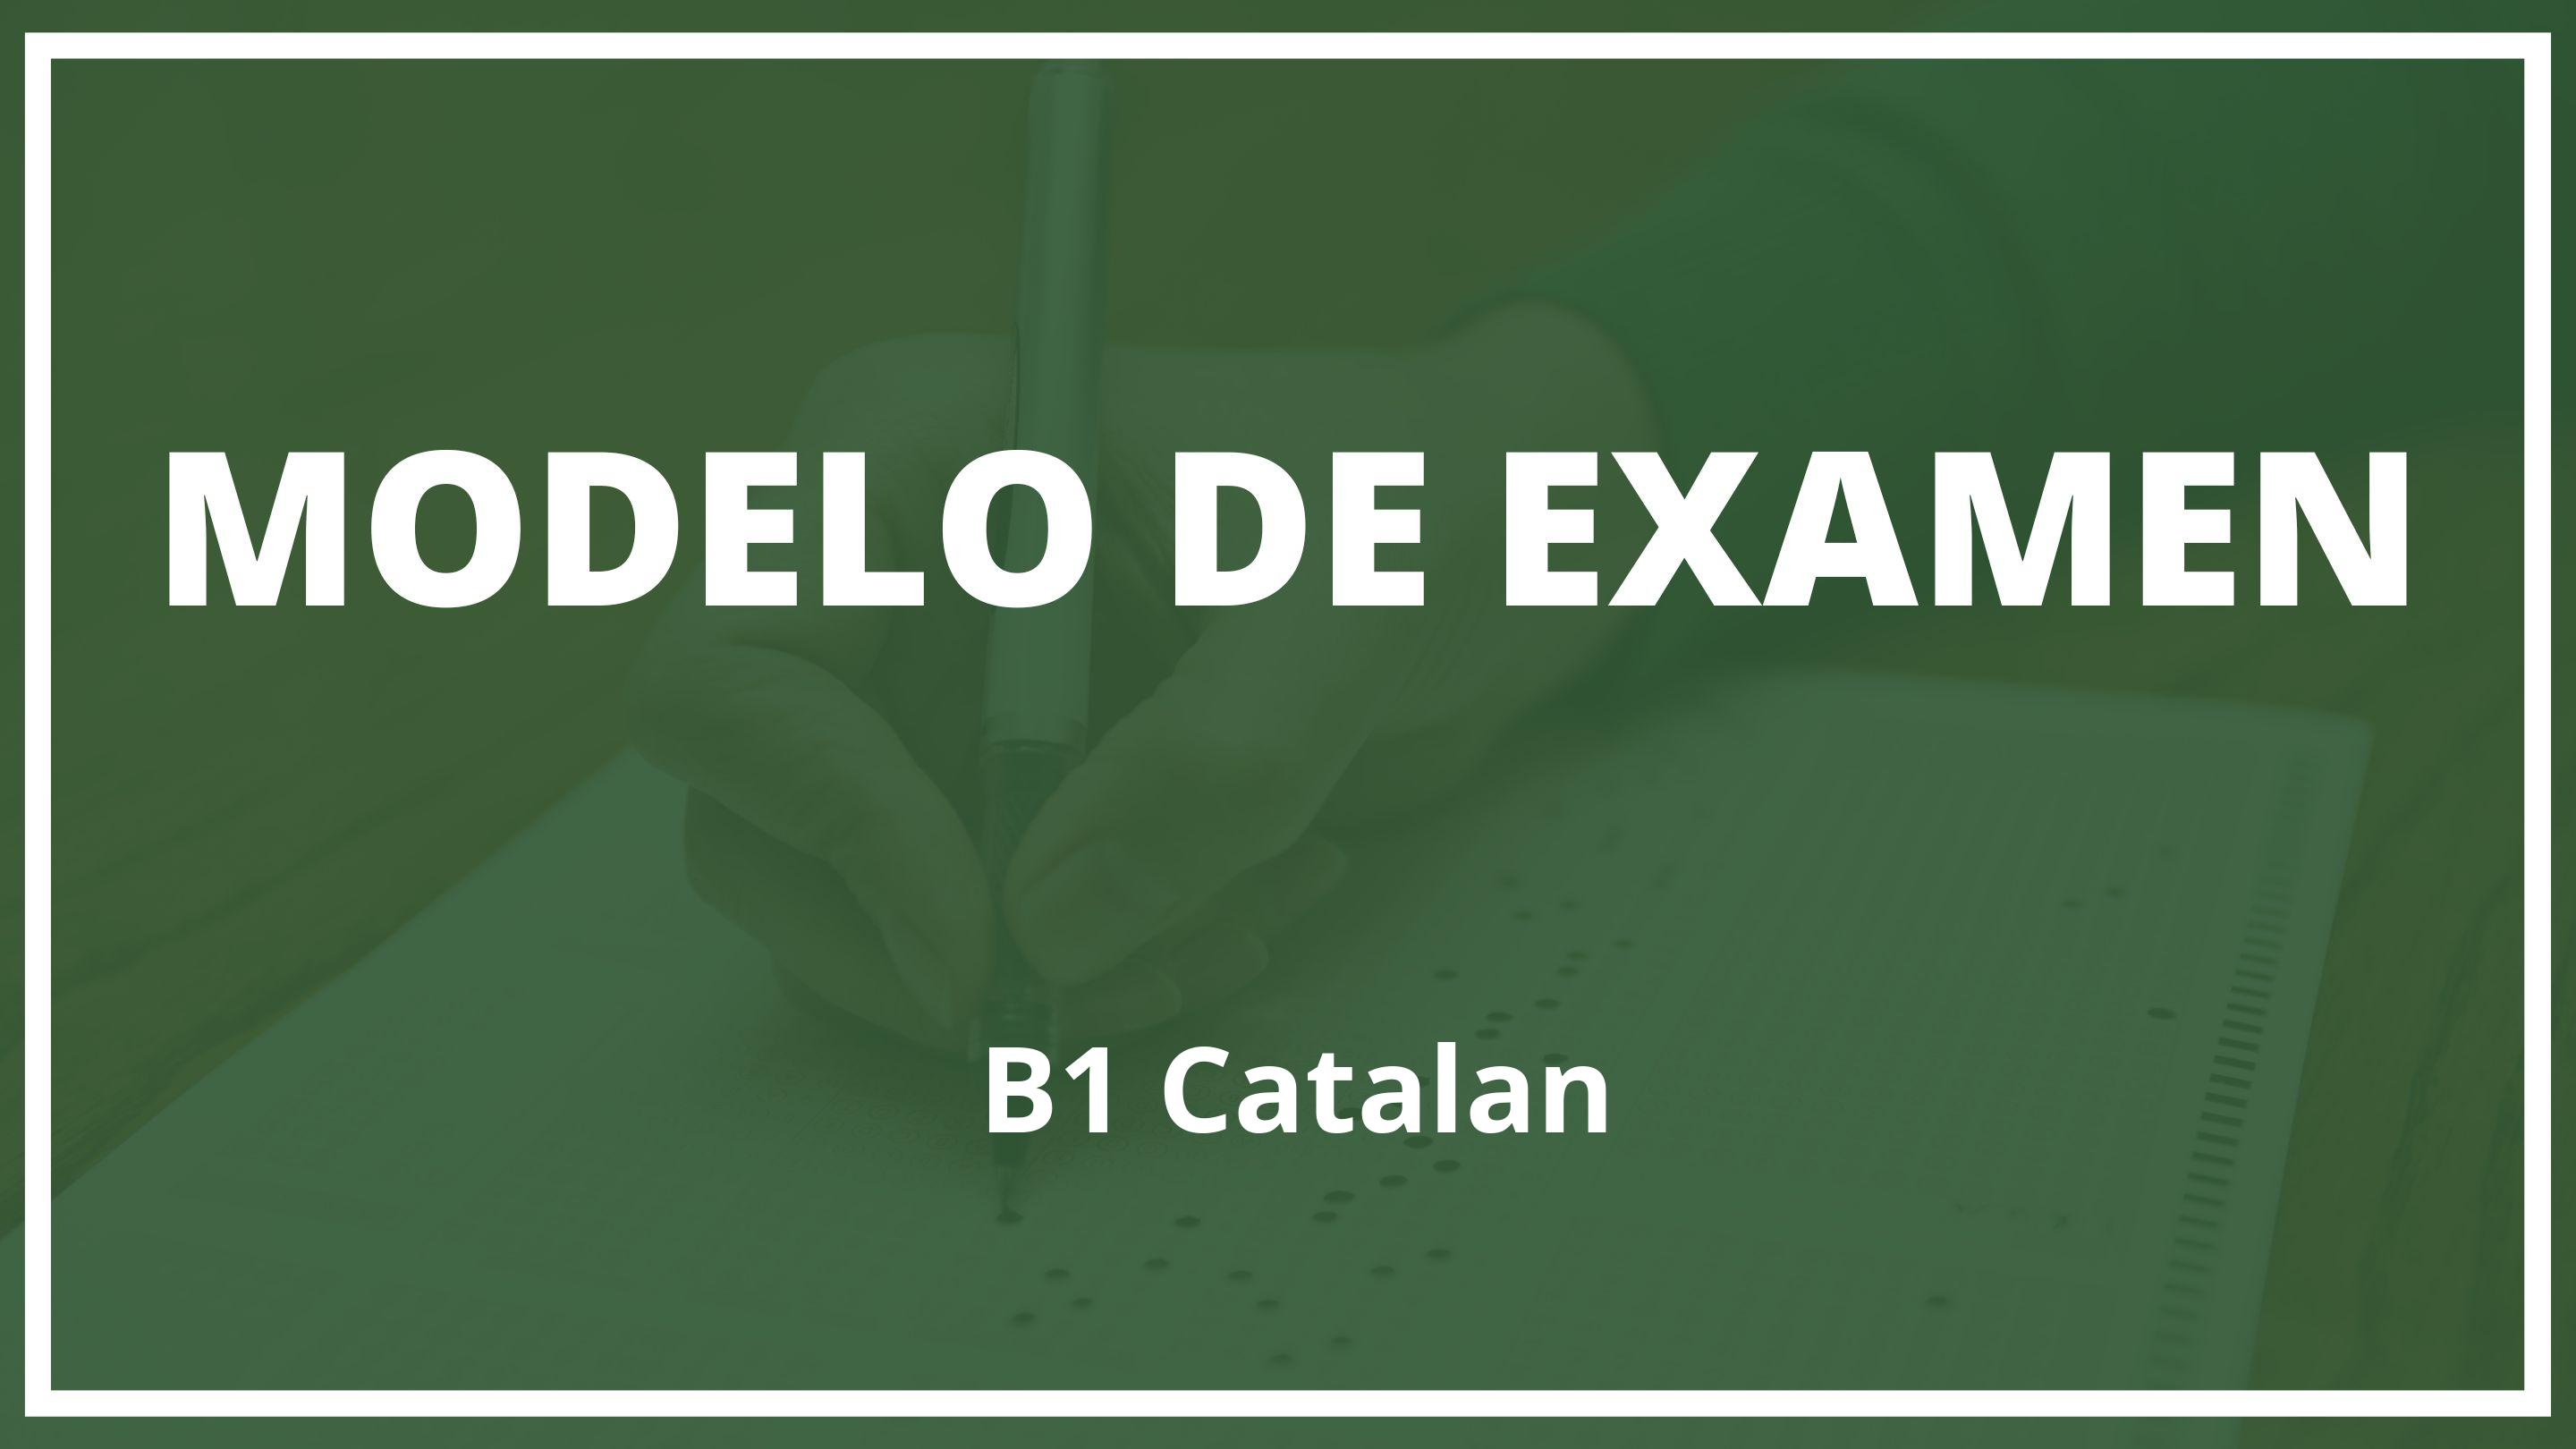 Examen B1 Catalan